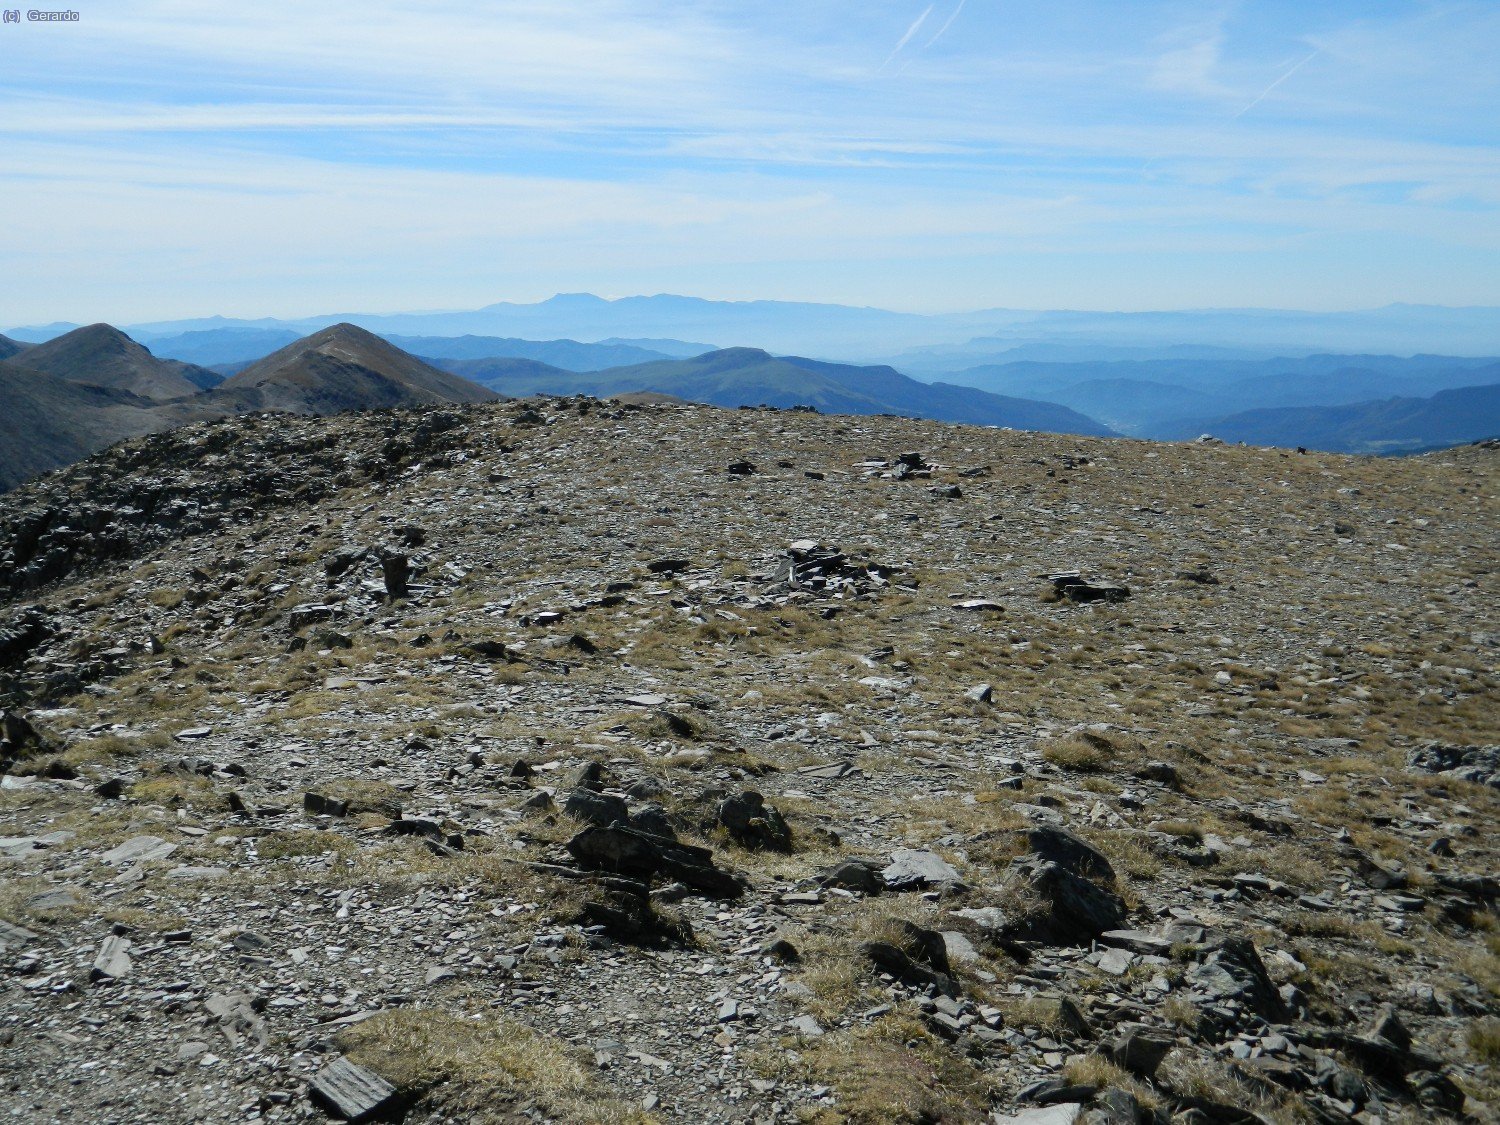 Sud, dominat de lluny pel Montseny-Matagalls, amb les puntes dels Torreneules a l